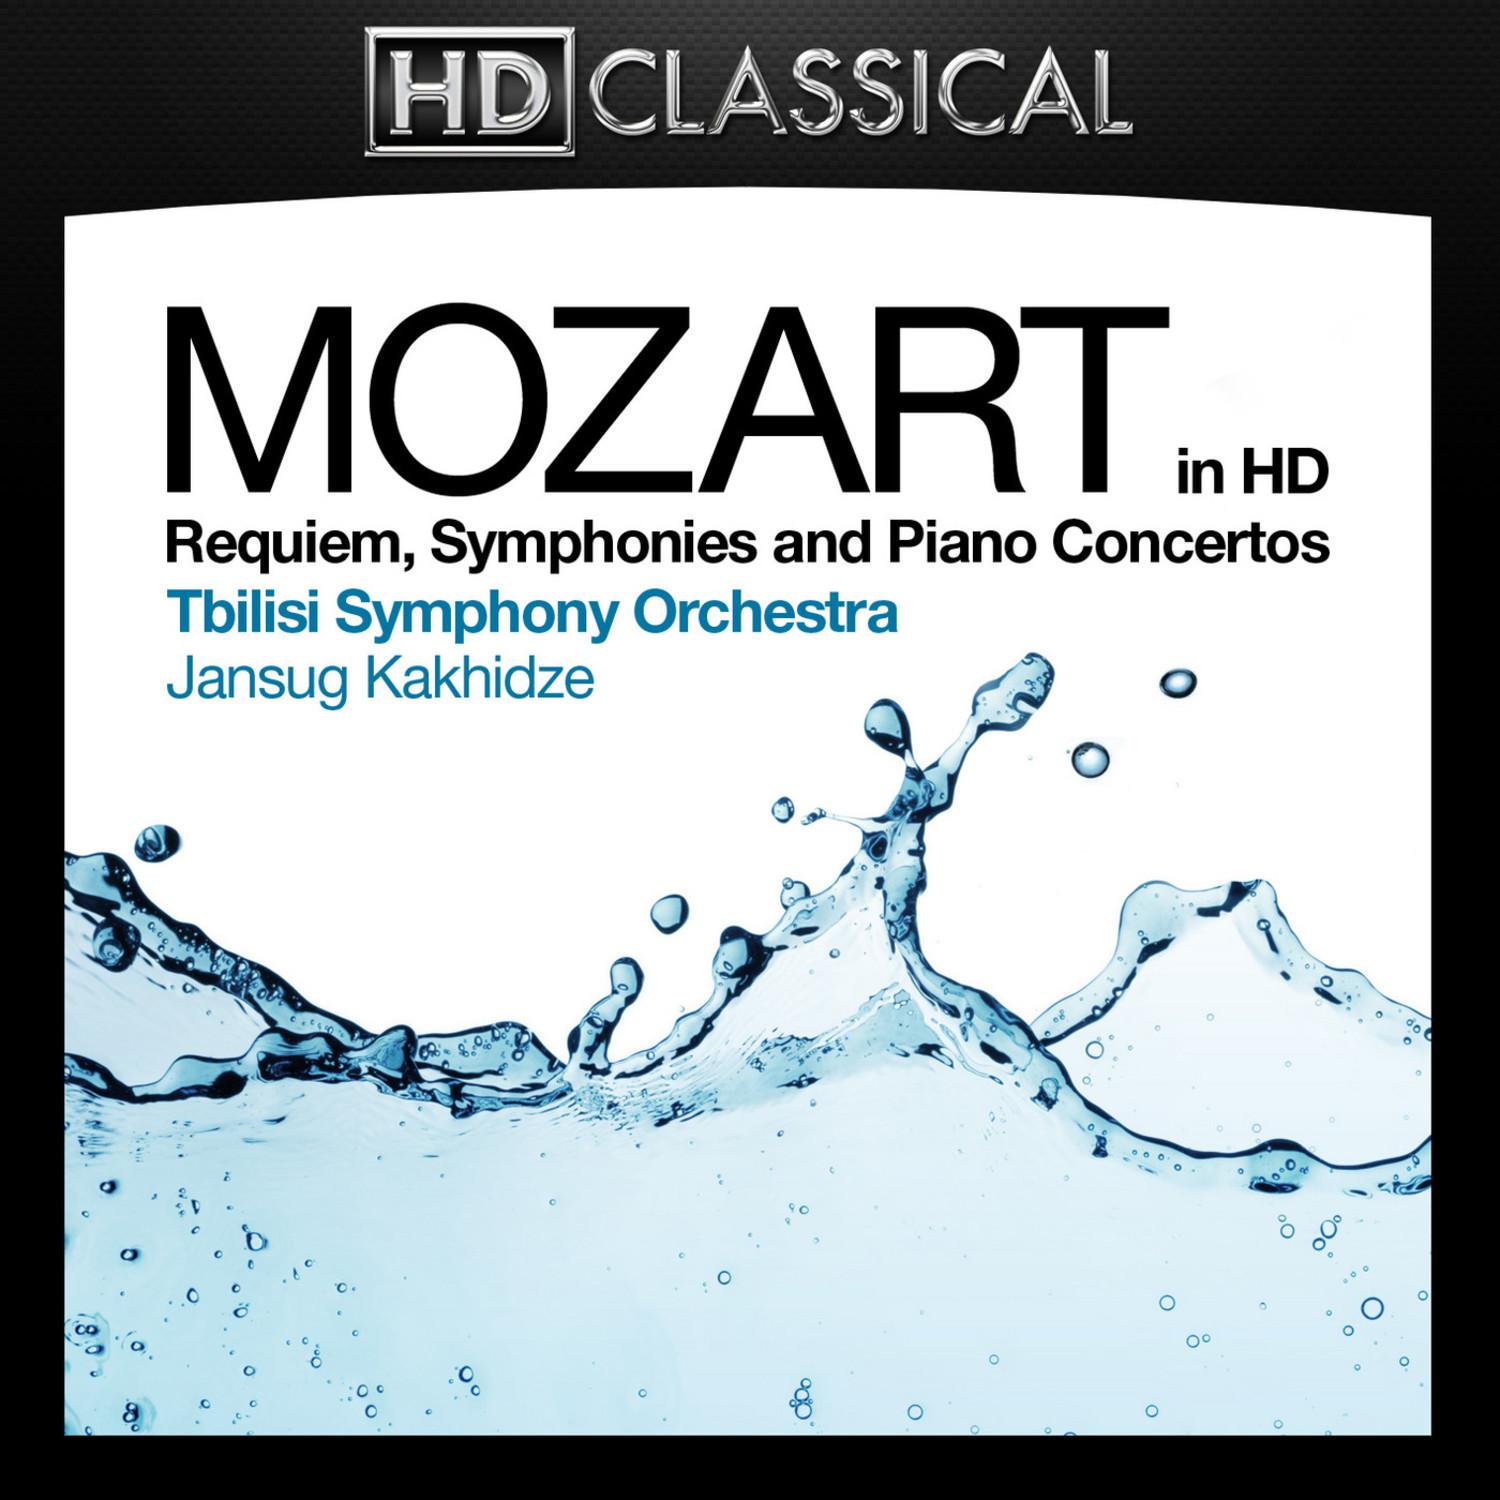 Concerto No. 24 in C Minor for Piano and Orchestra, K. 491: I. Allegro